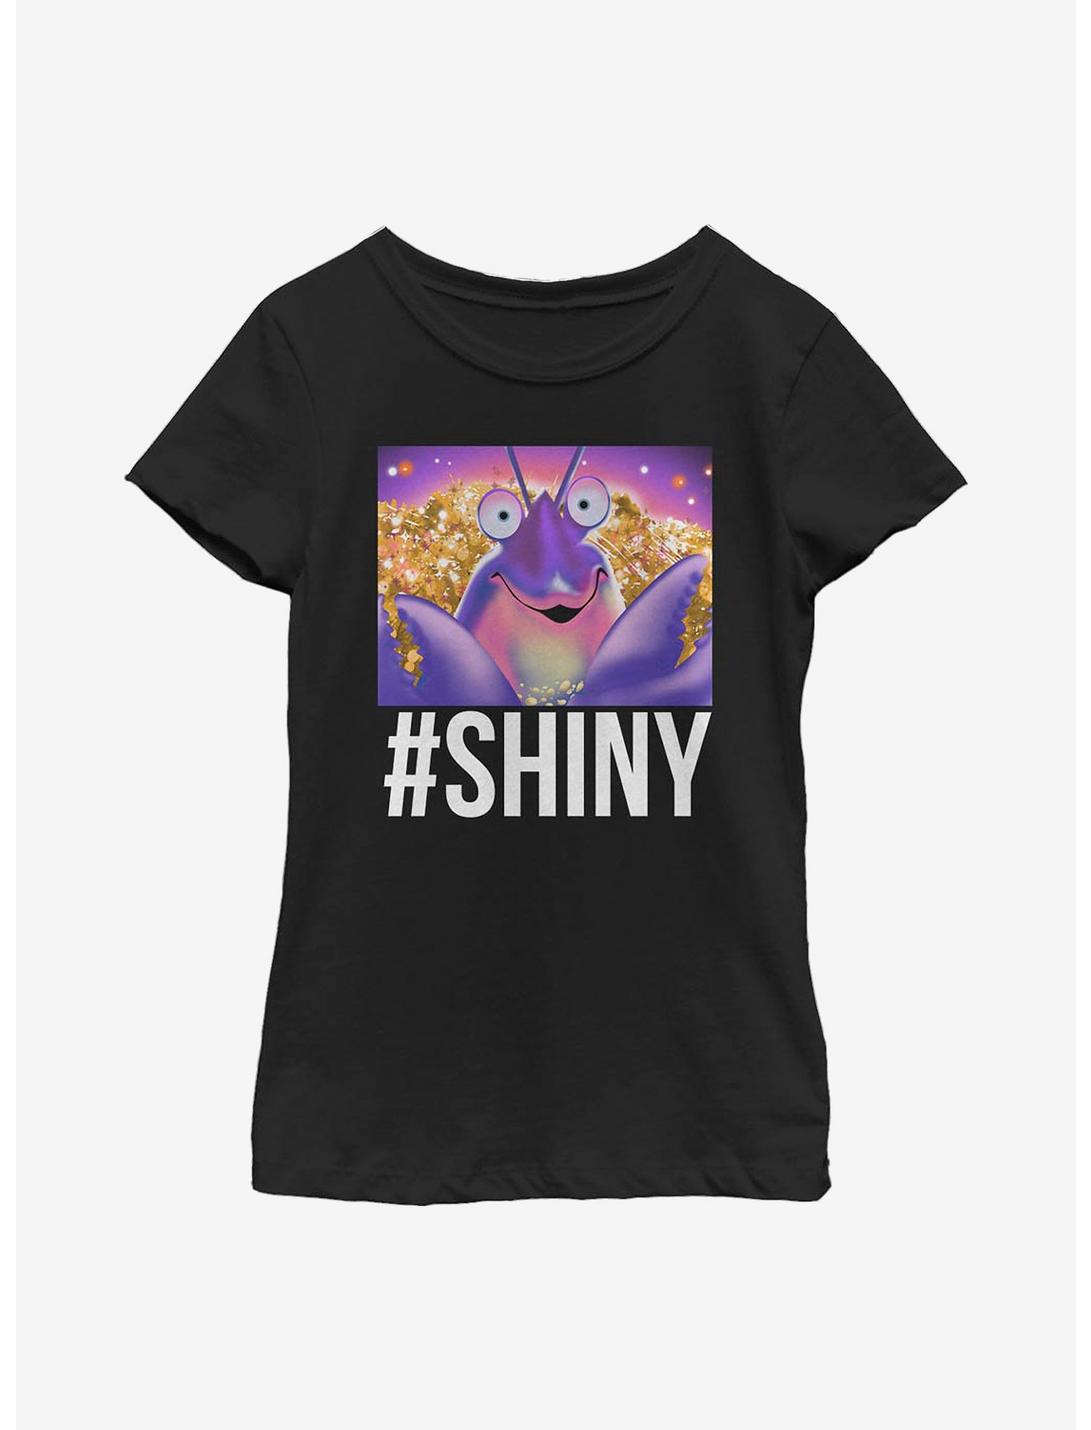 Disney Moana So Shiny Youth Girls T-Shirt, BLACK, hi-res